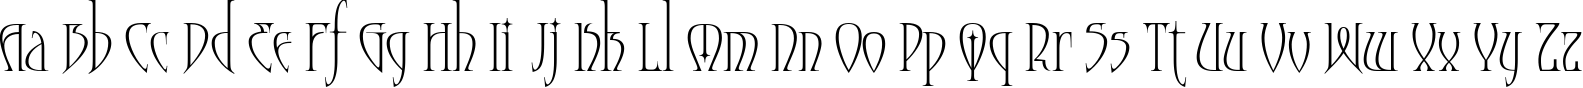 Пример написания английского алфавита шрифтом Moonstone